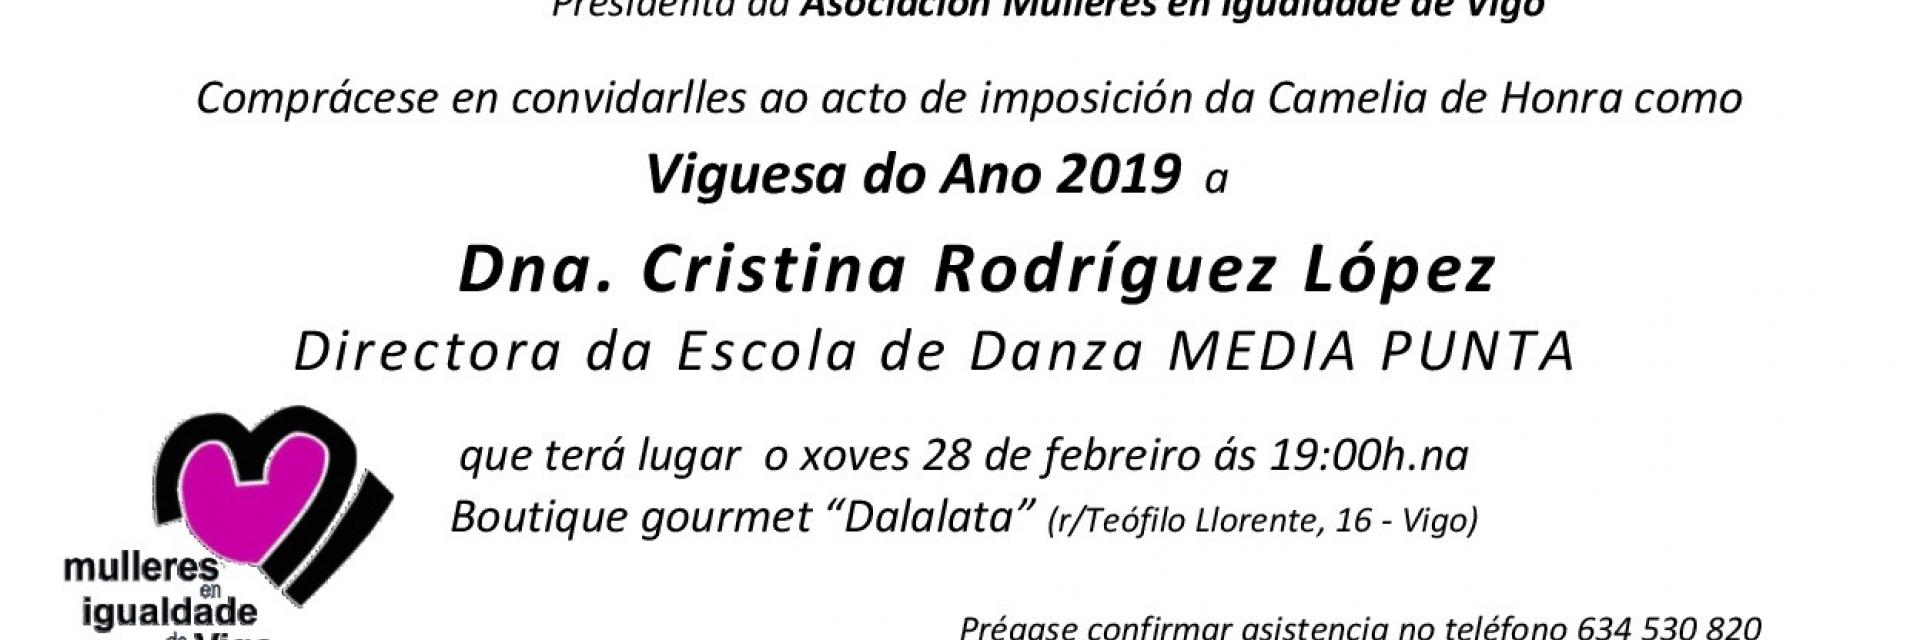 Viguesa del año 2019 - Cristina Rodríguez López